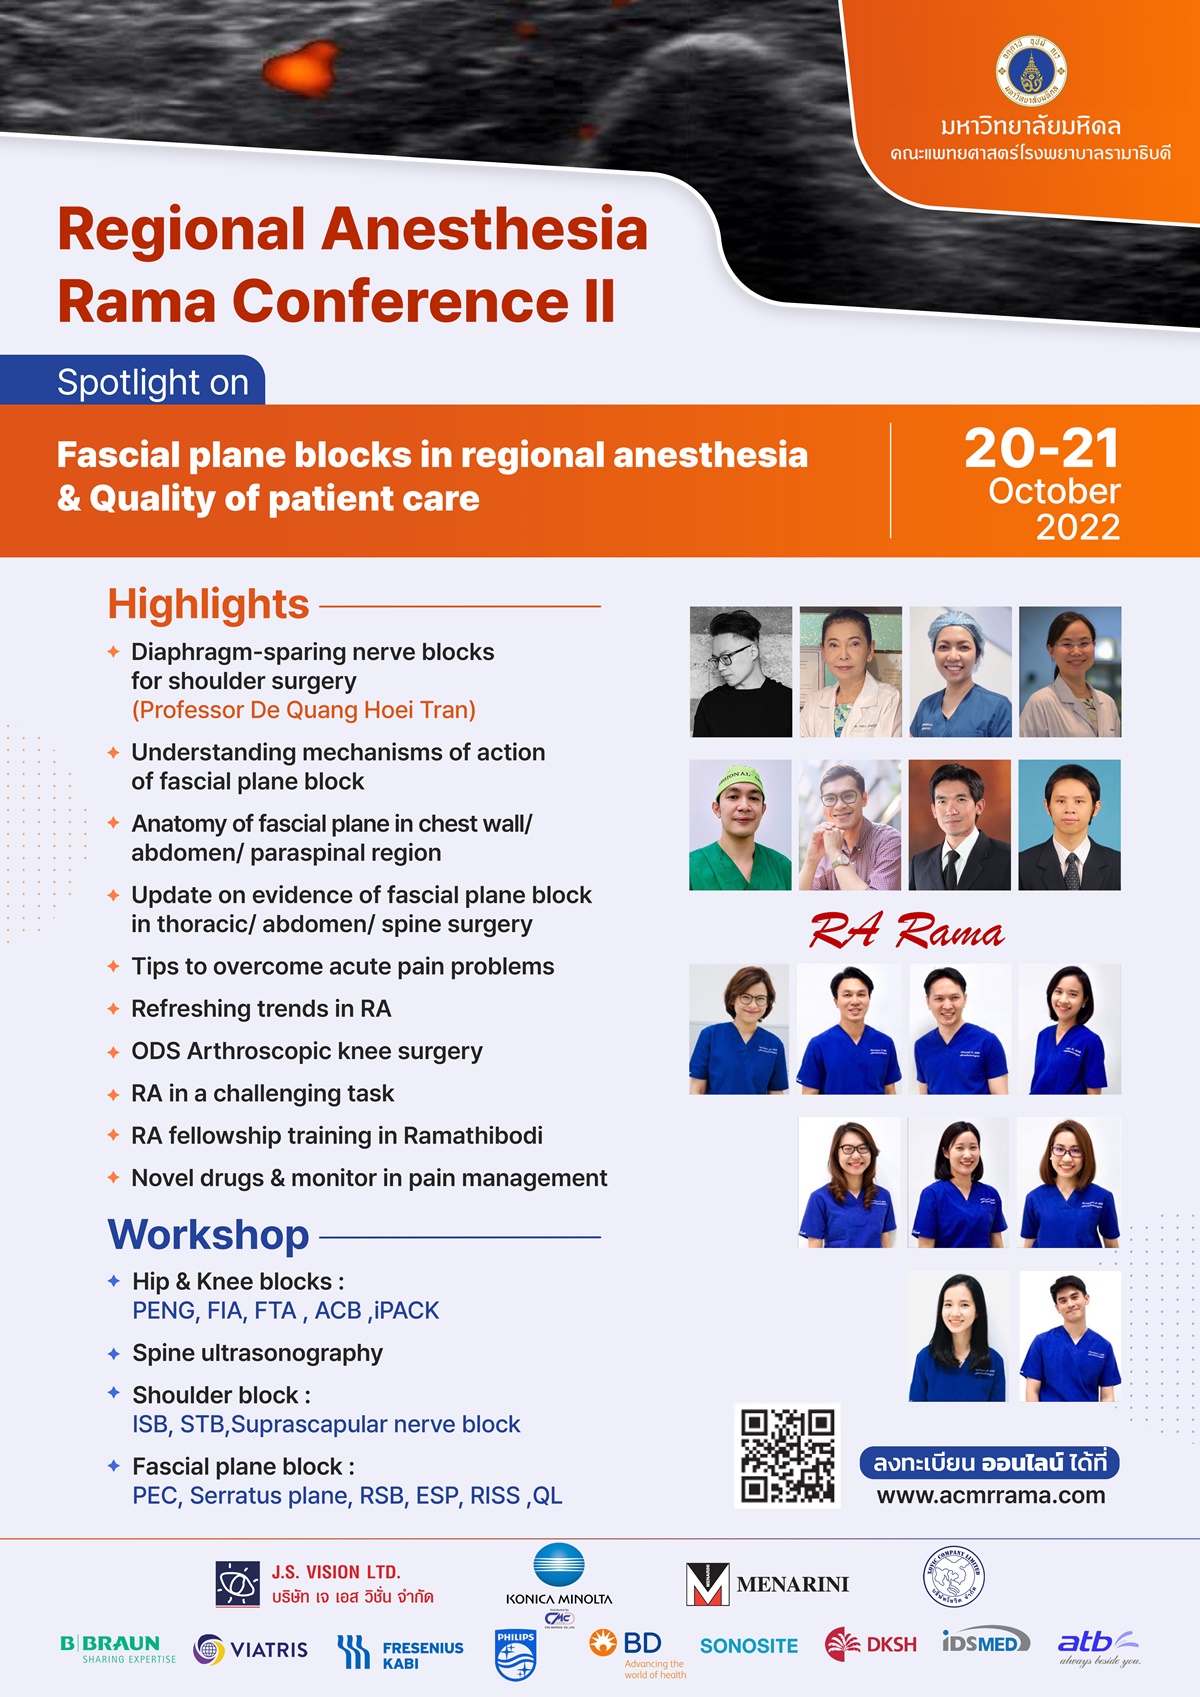 Regional Anesthesia Ramathibodi Conference 2022